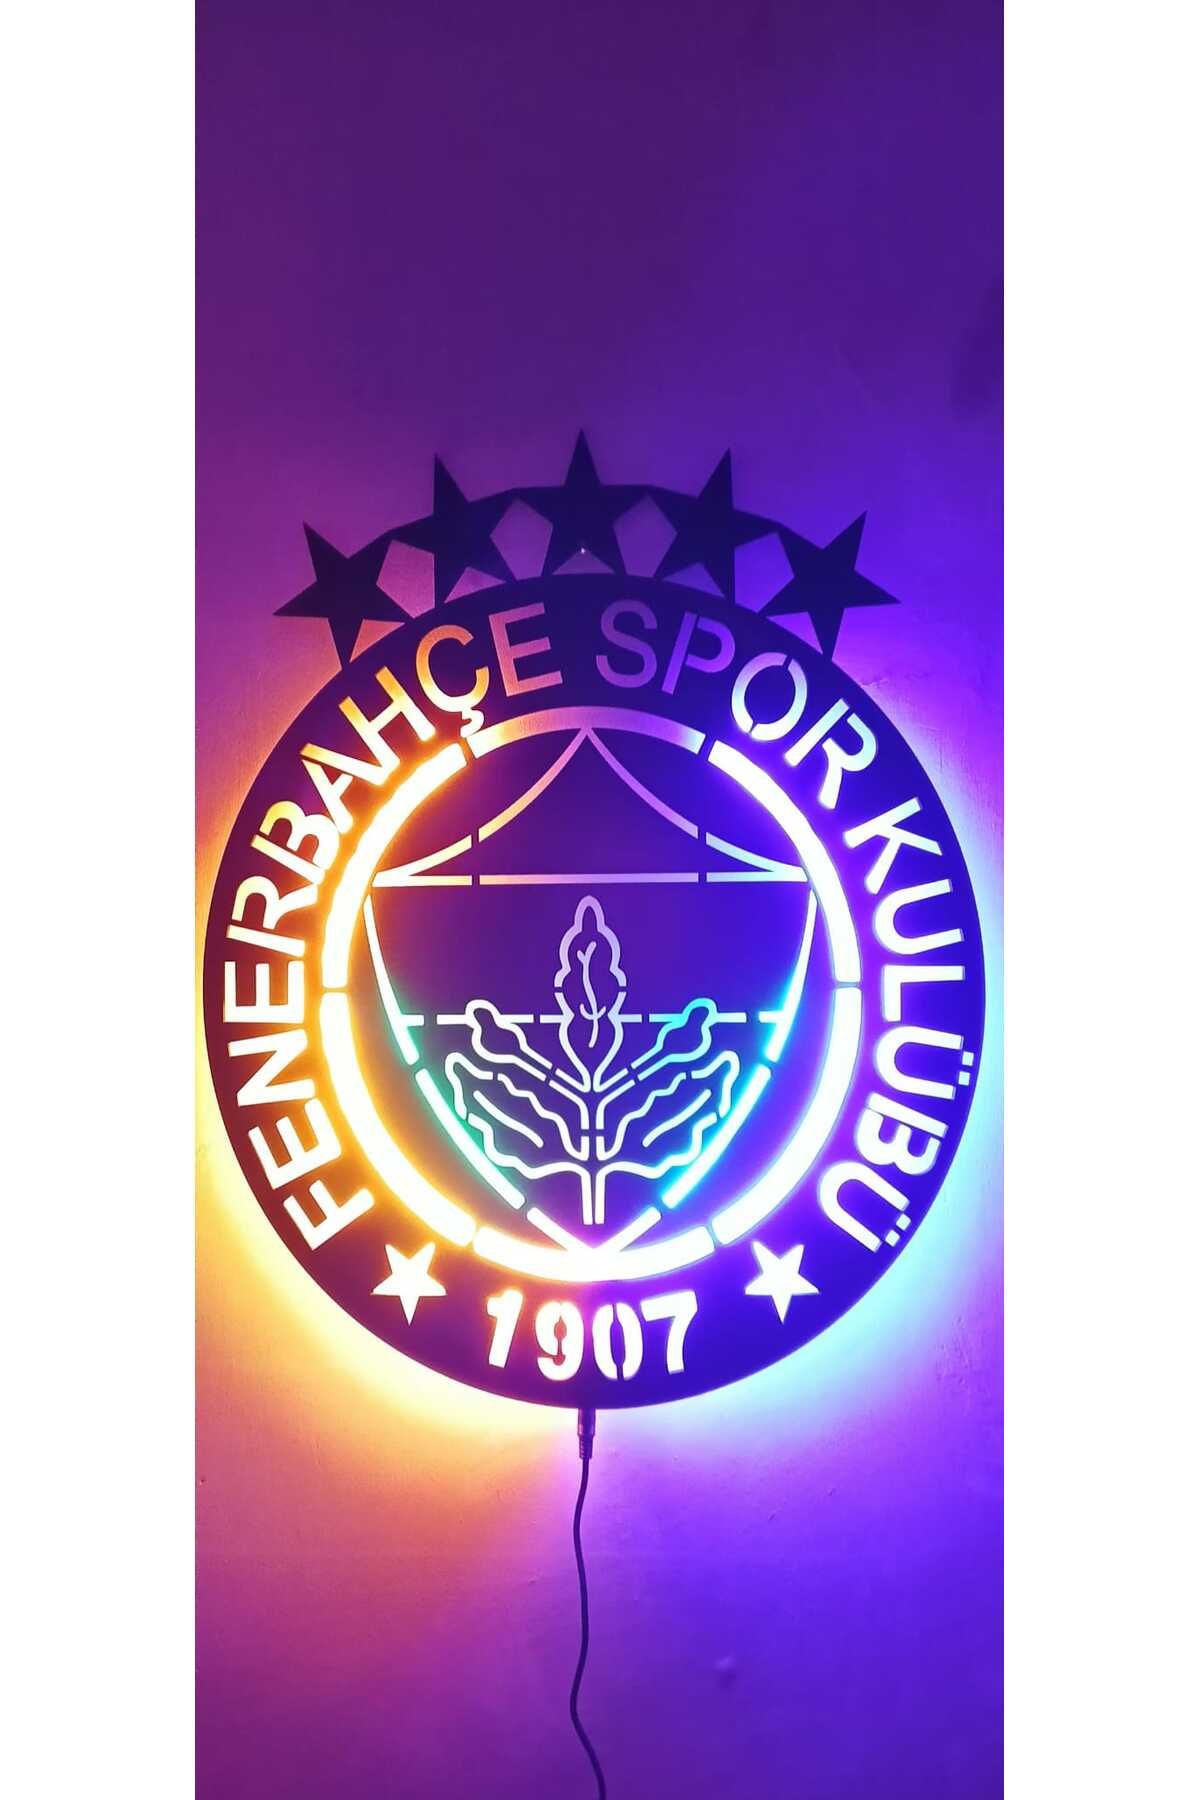 Deluxe wood Duvar Tablosu, Işıklı Fenerbahçe Logosu, 5 Yıldız Tablo